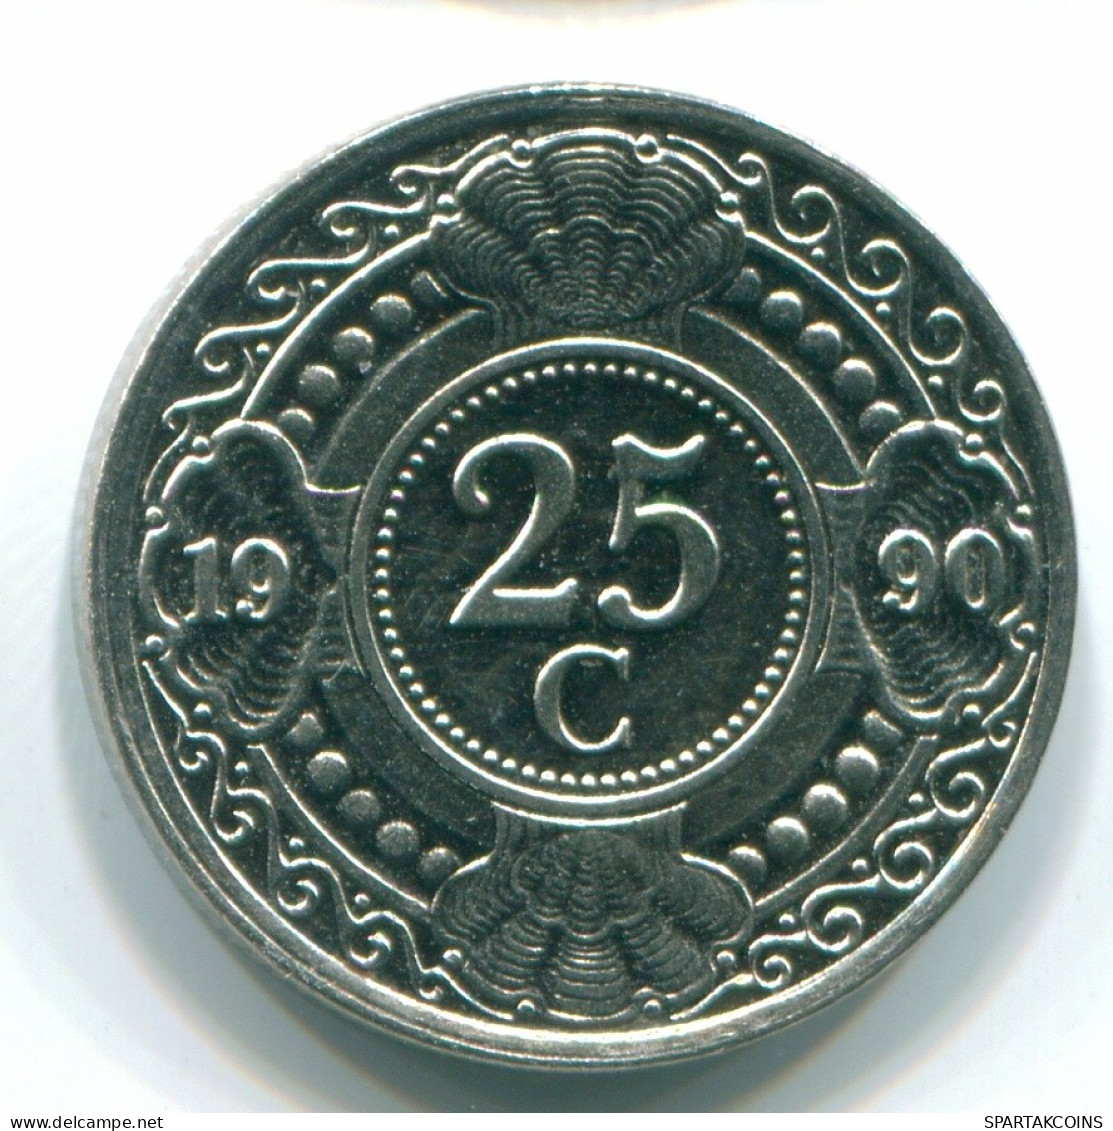 25 CENTS 1990 ANTILLAS NEERLANDESAS Nickel Colonial Moneda #S11274.E.A - Antilles Néerlandaises